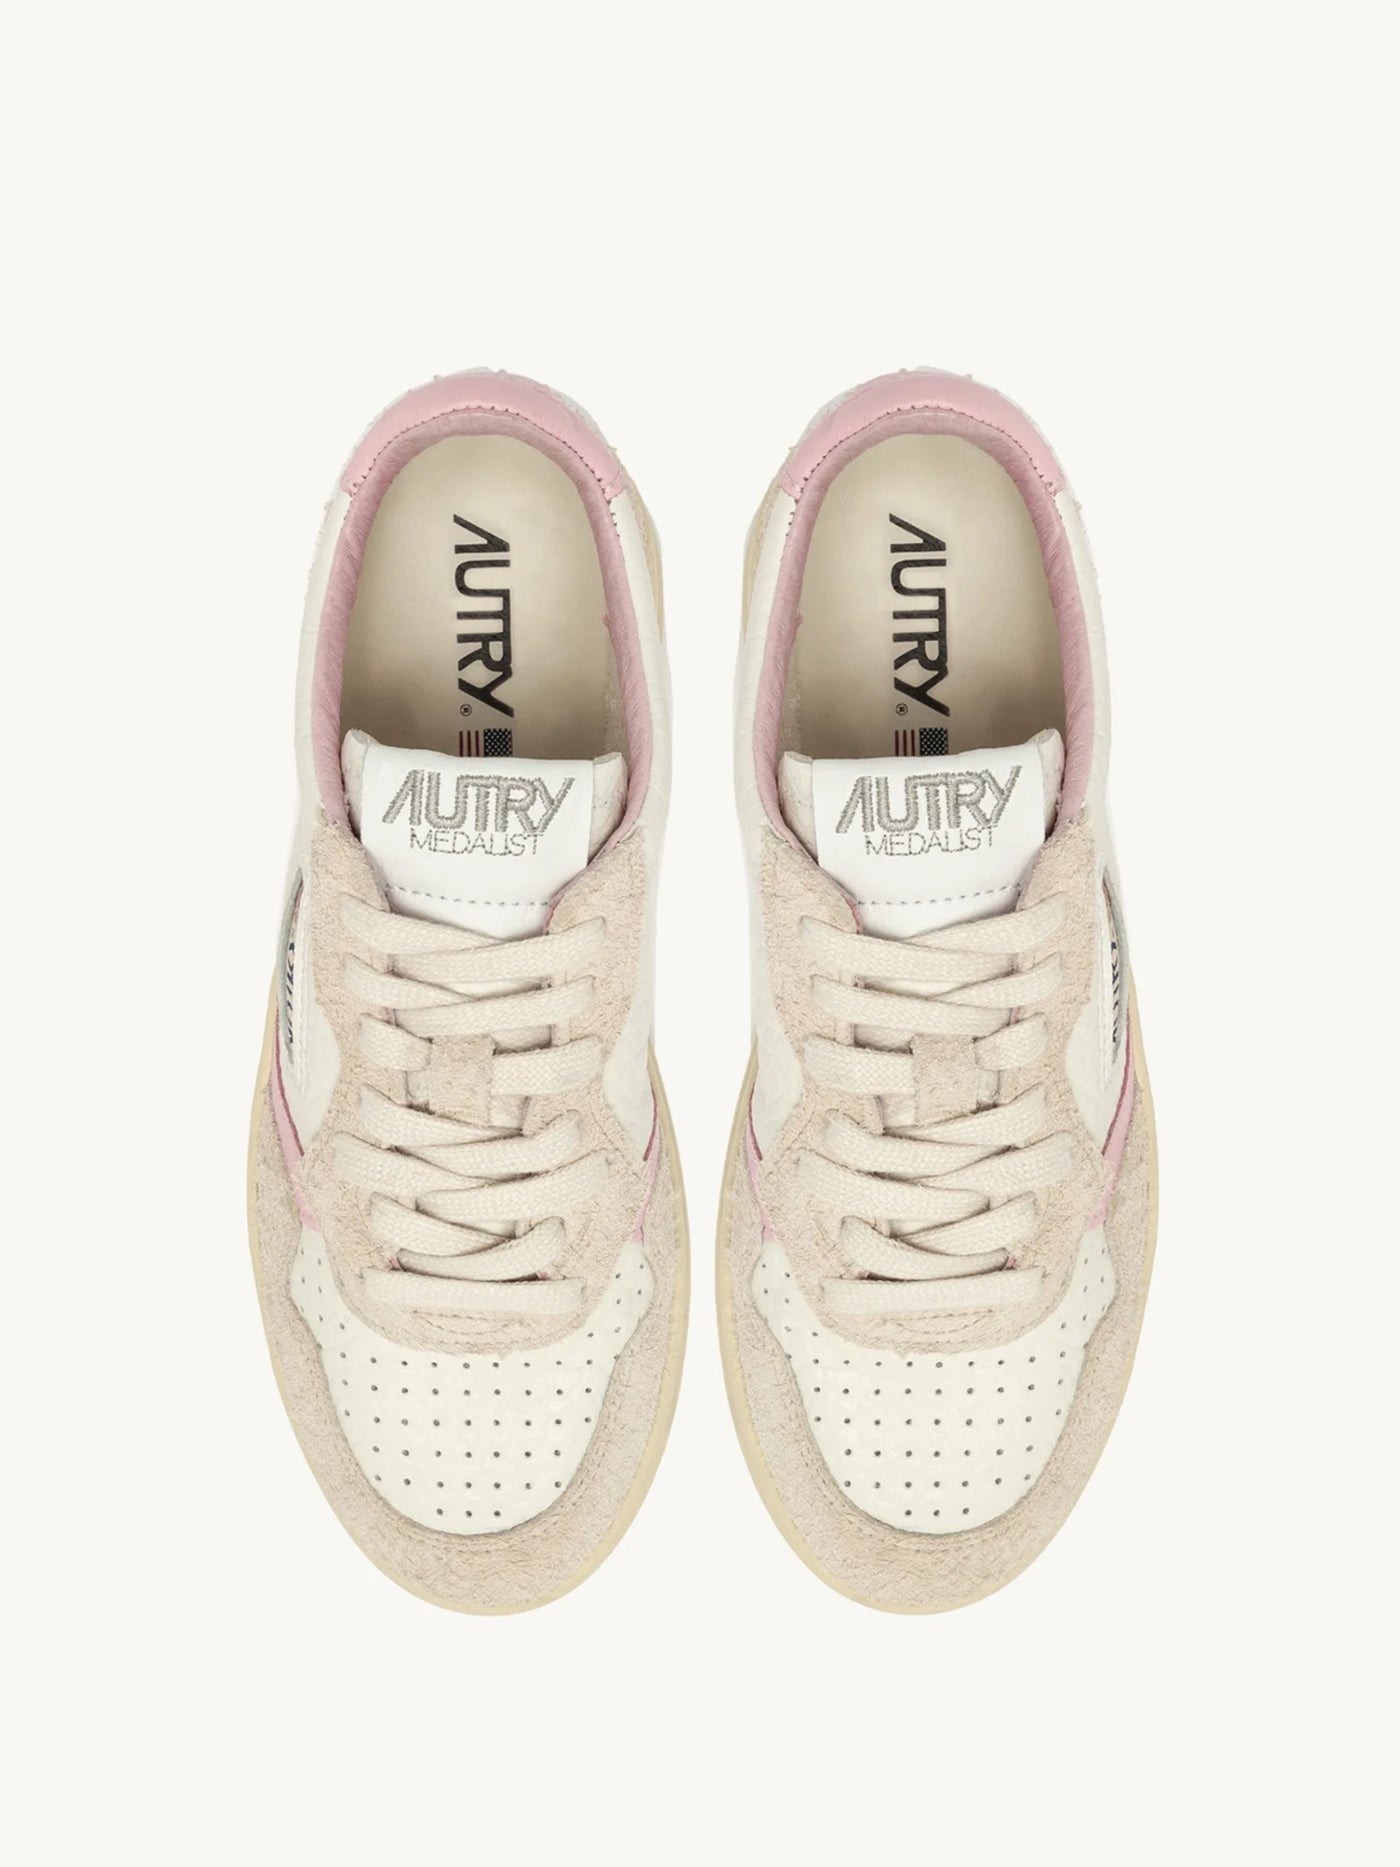 Sneaker Medalist aus genarbten Leder in weiß mit rosa